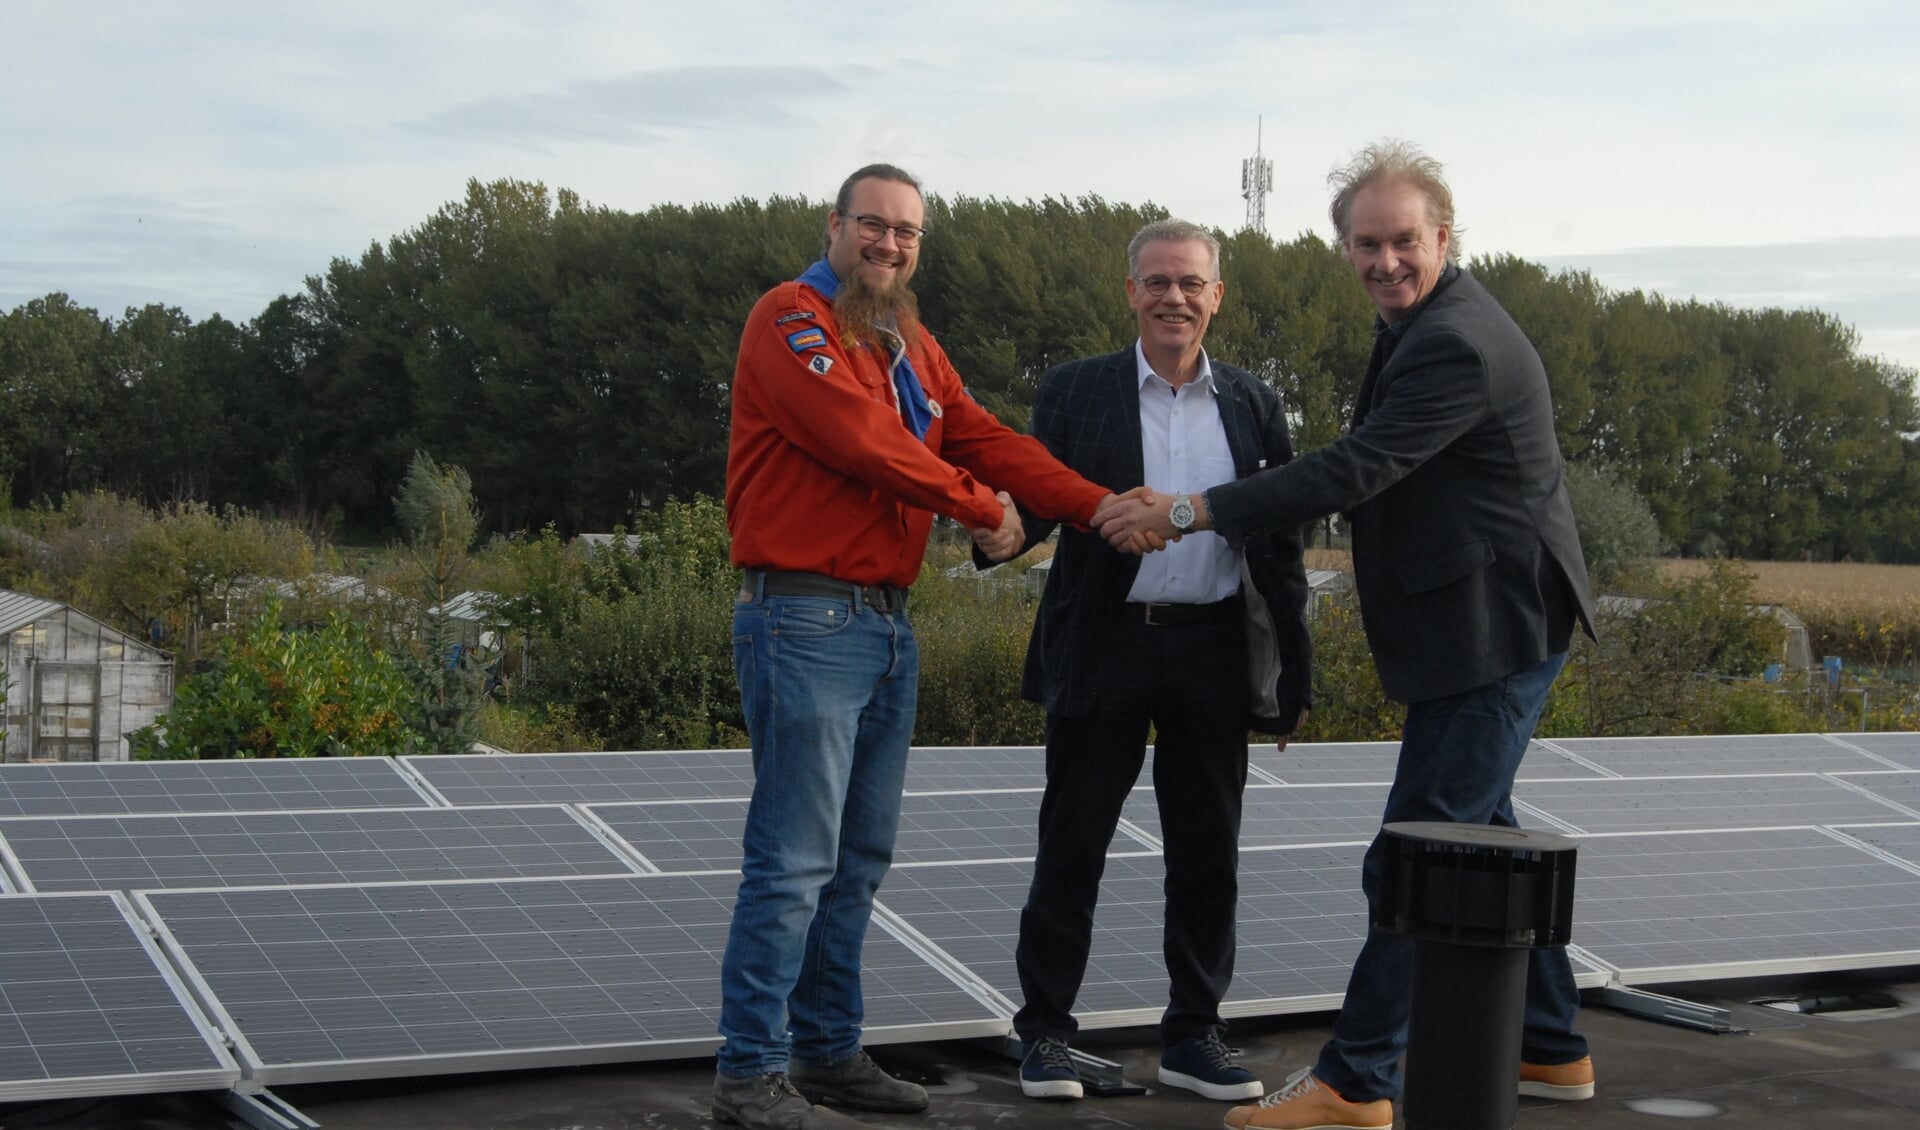 De zonnepanelen werden met een handdruk van de cooperatiefondsleden Wouter Gorter en Co van Hengel symbolisch aan de leiding van de Scouting Ooievaargroep overhandigd.